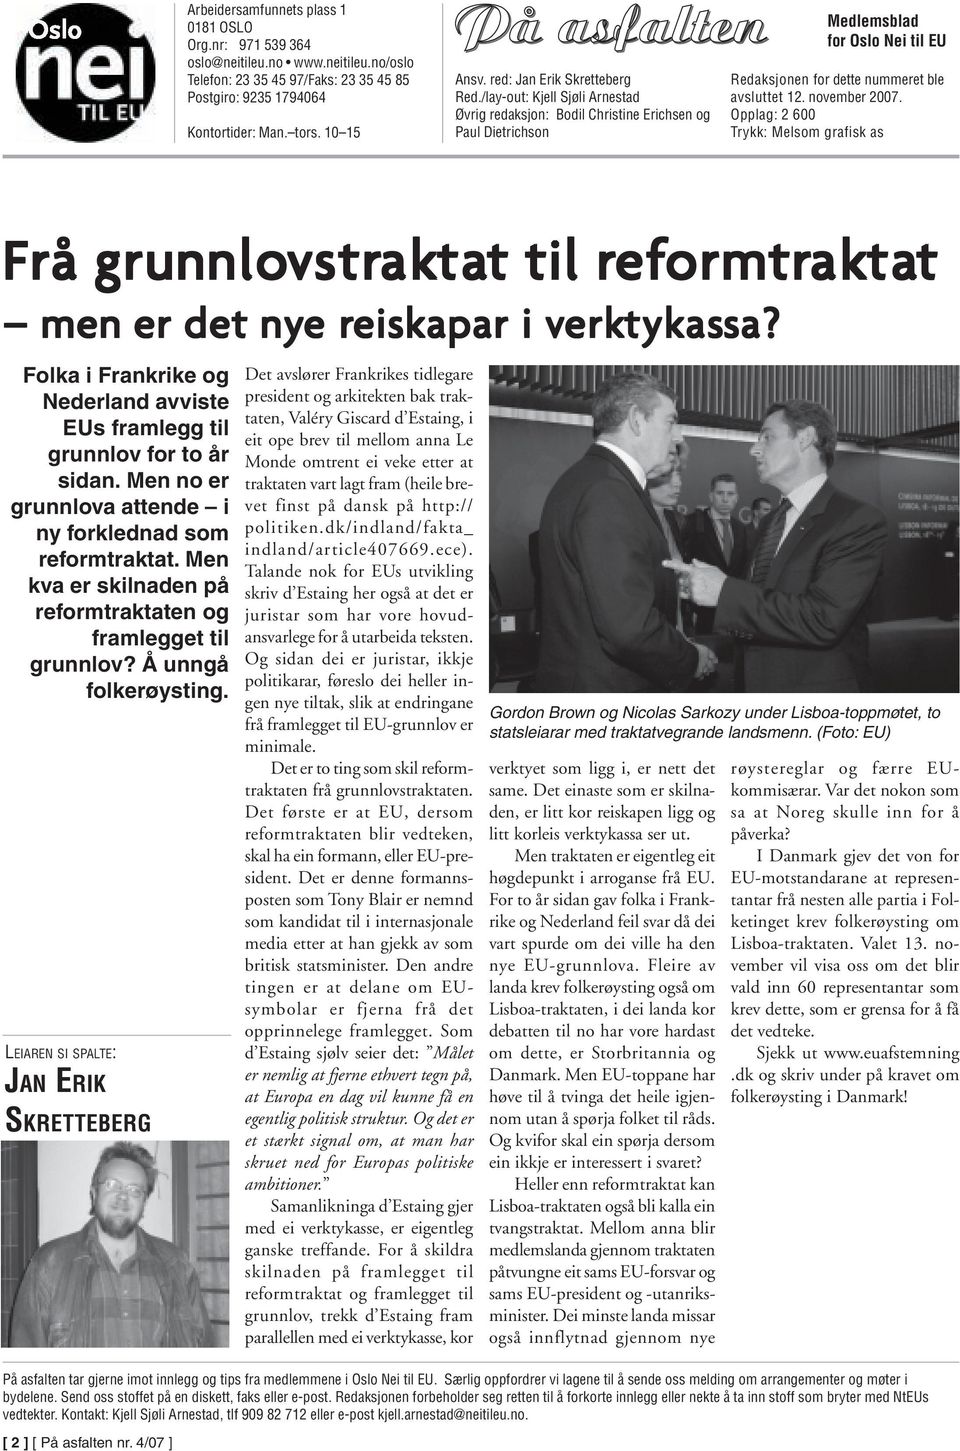 /lay-out: Kjell Sjøli Arnestad Øvrig redaksjon: Bodil Christine Erichsen og Paul Dietrichson Medlemsblad for Oslo Nei til EU Redaksjonen for dette nummeret ble avsluttet 12. november 2007.